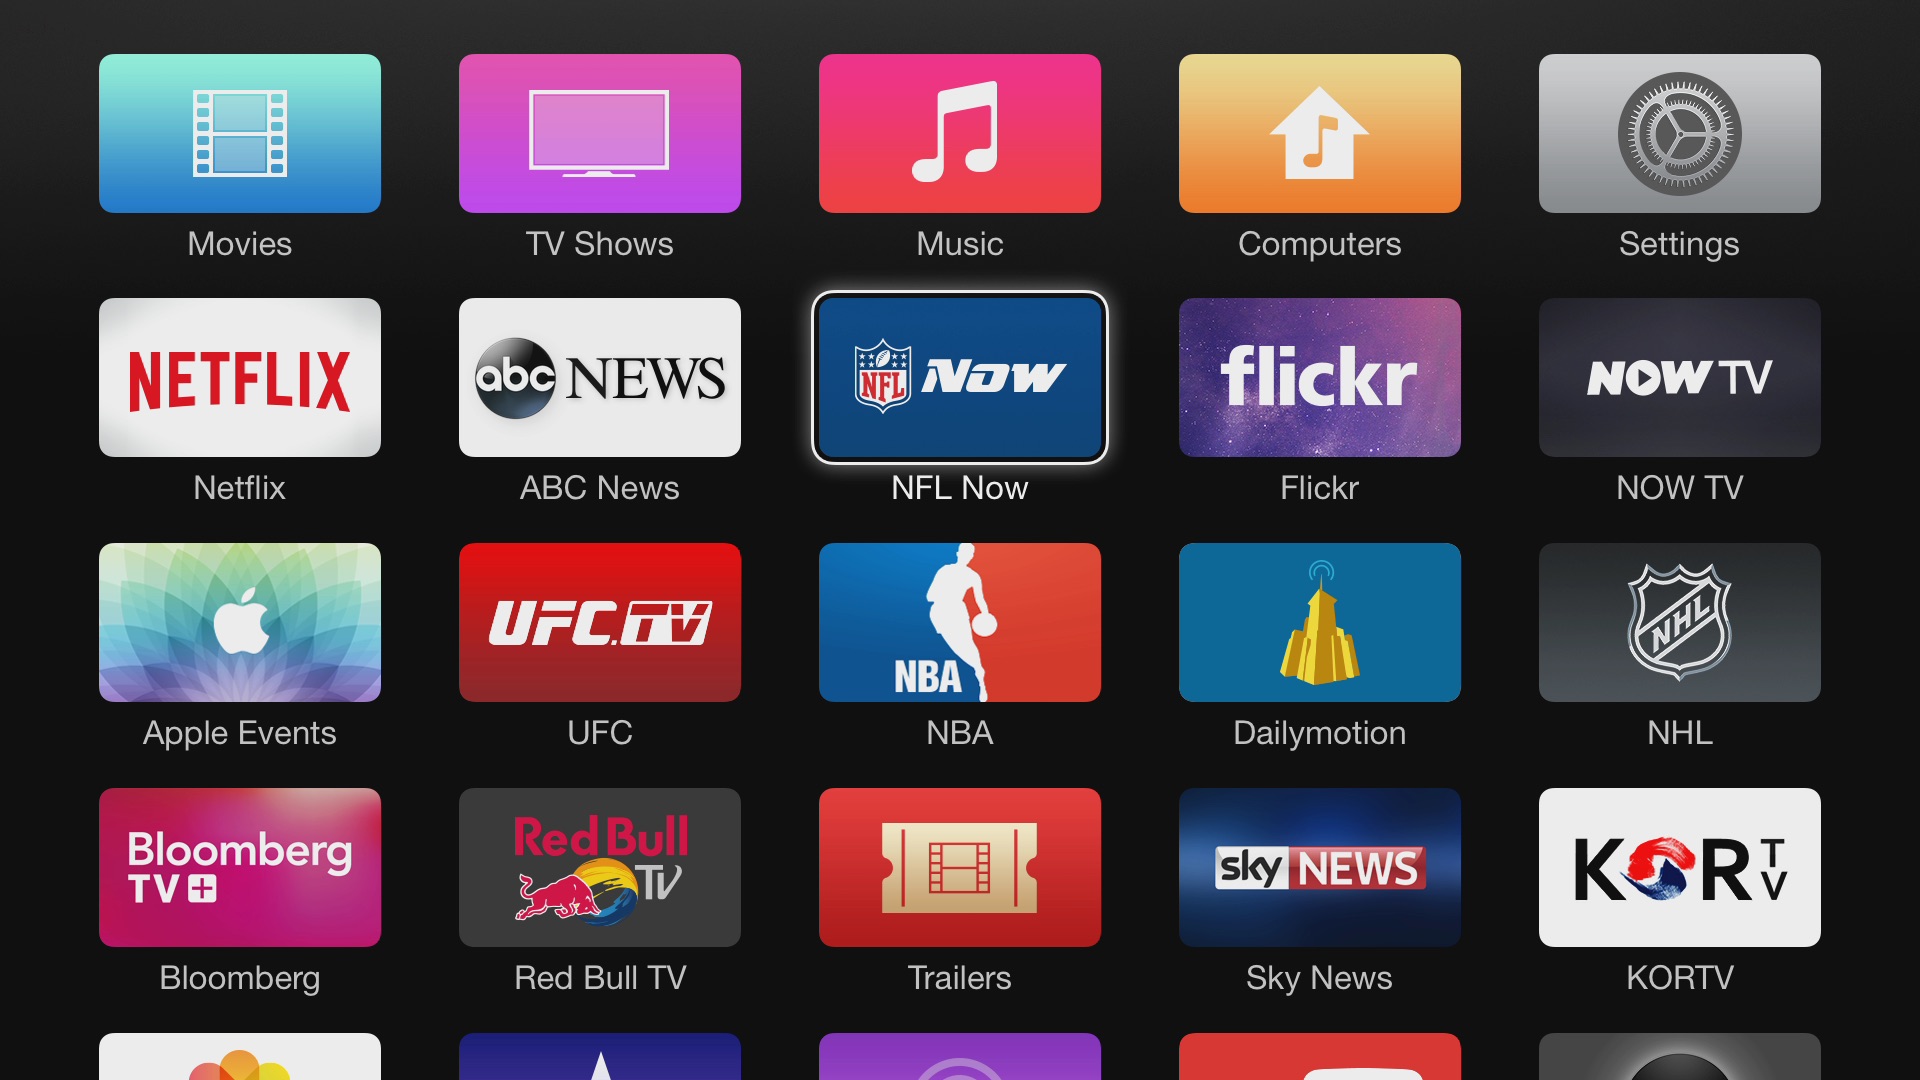 ВИДЕО: Распаковка и обзор Apple TV 4